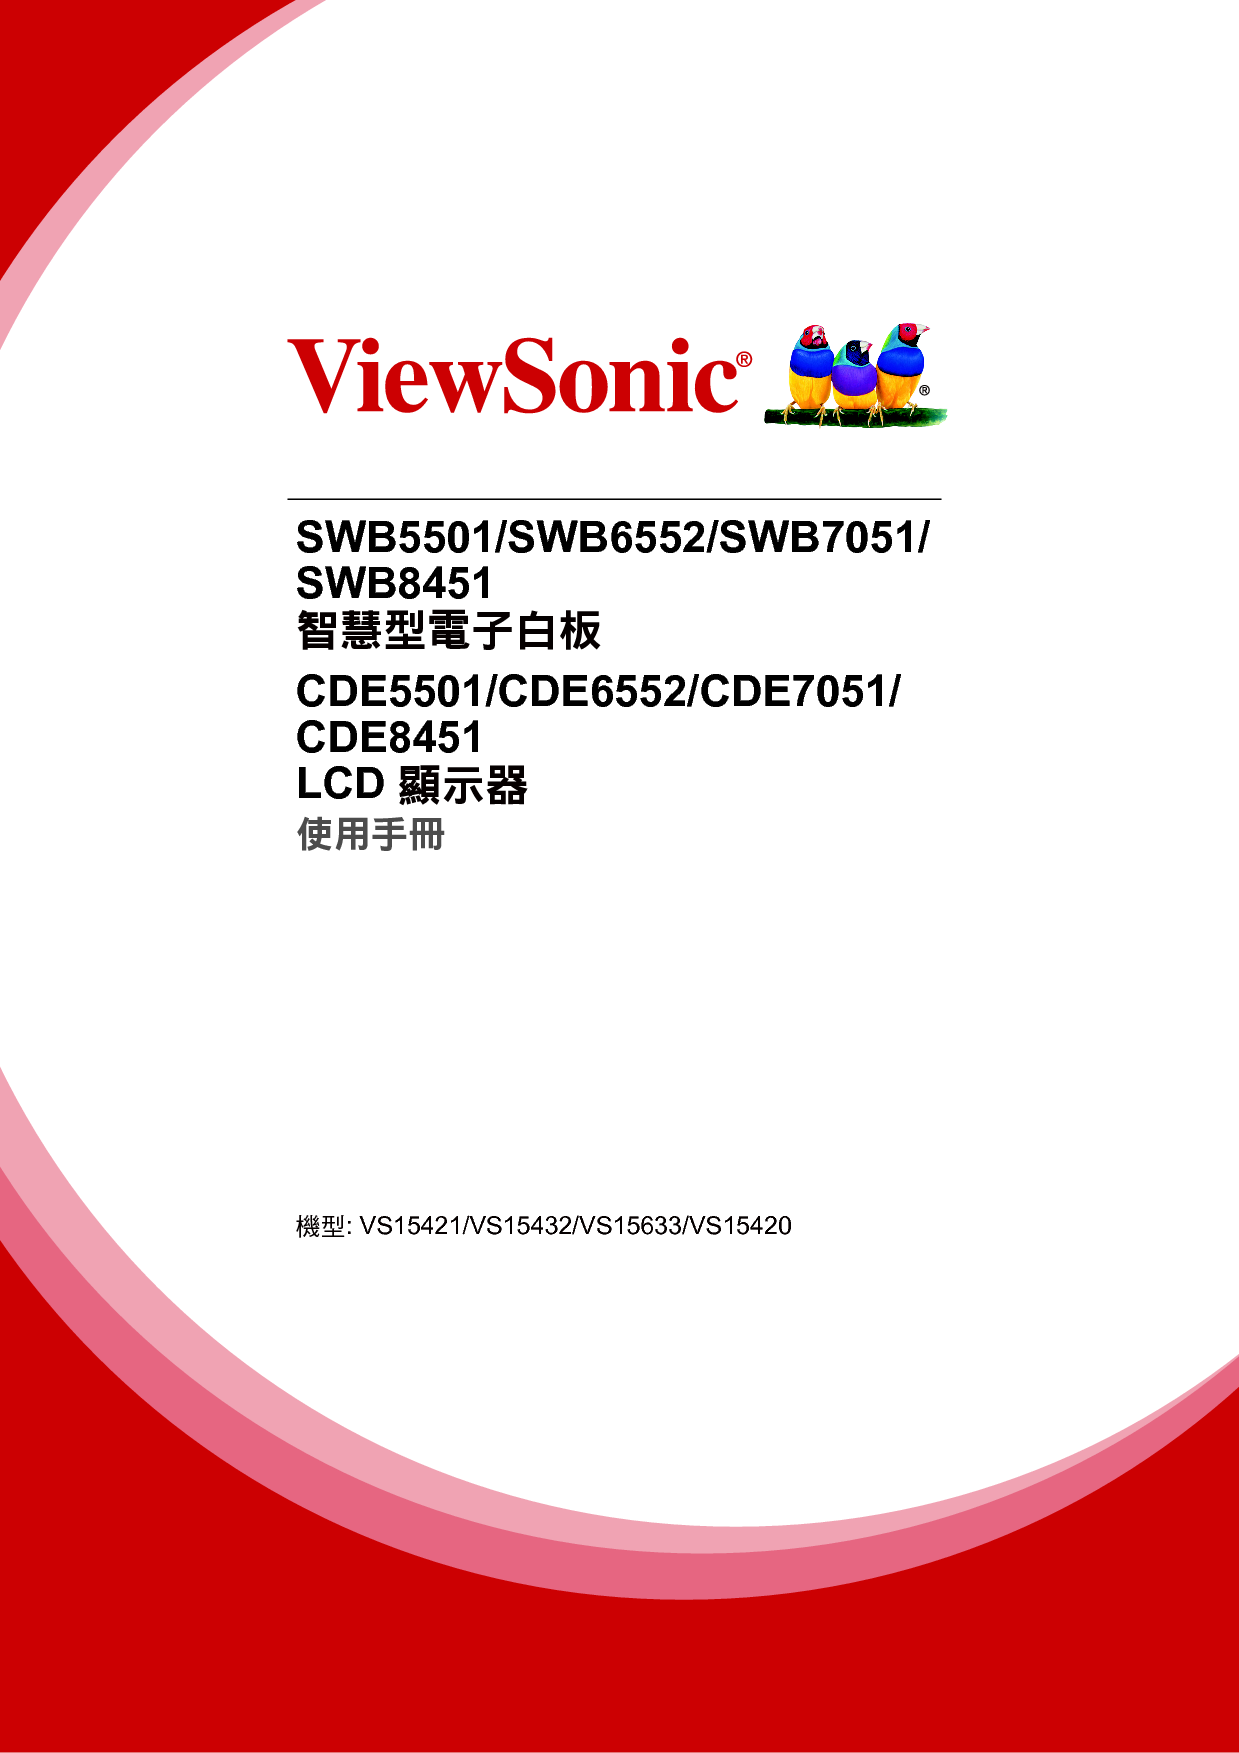 优派 ViewSonic CDE5501, SWB5501 繁体 使用手册 封面